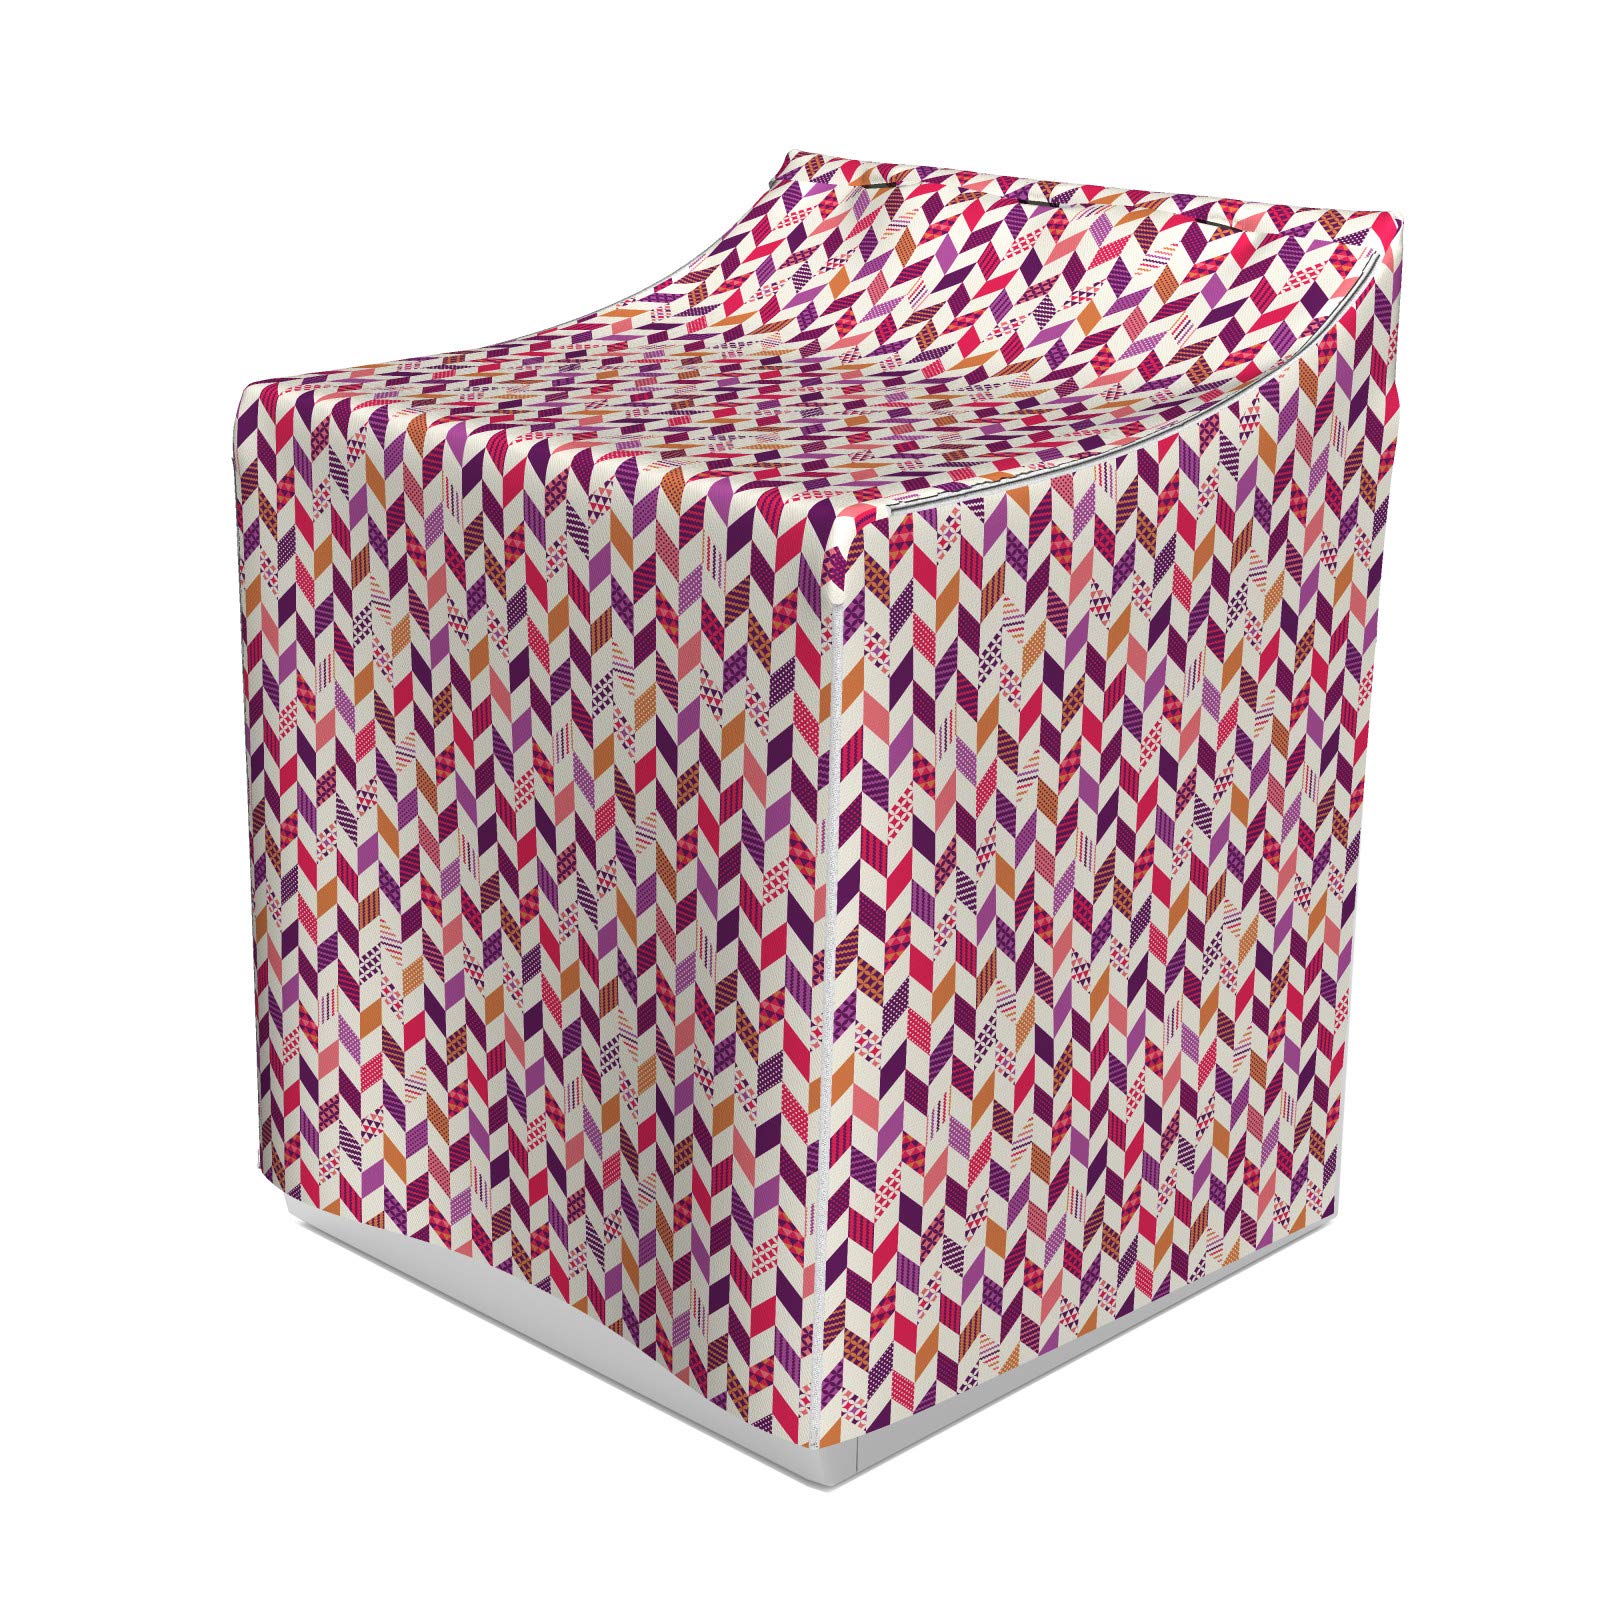 ABAKUHAUS Winkel Waschmaschienen und Trockner, Patchwork Design Geometrische Komposition mit Sternen Kreisen und Dreiecken inspiriert, Bezug Dekorativ aus Stoff, 70x75x100 cm, Mehrfarbig